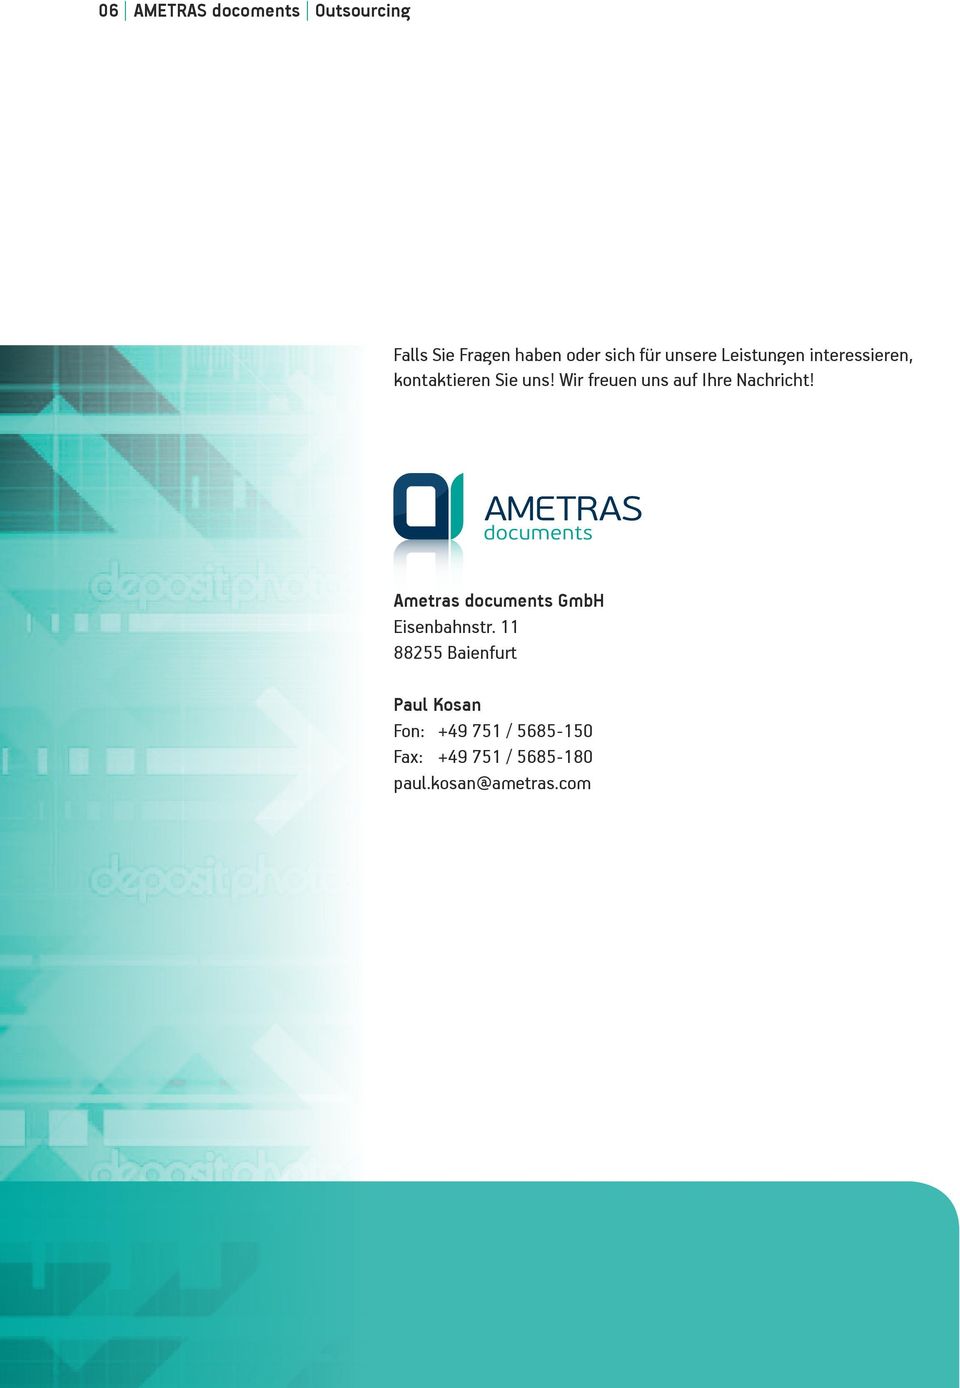 Wir freuen uns auf Ihre Nachricht! Ametras documents GmbH Eisenbahnstr.